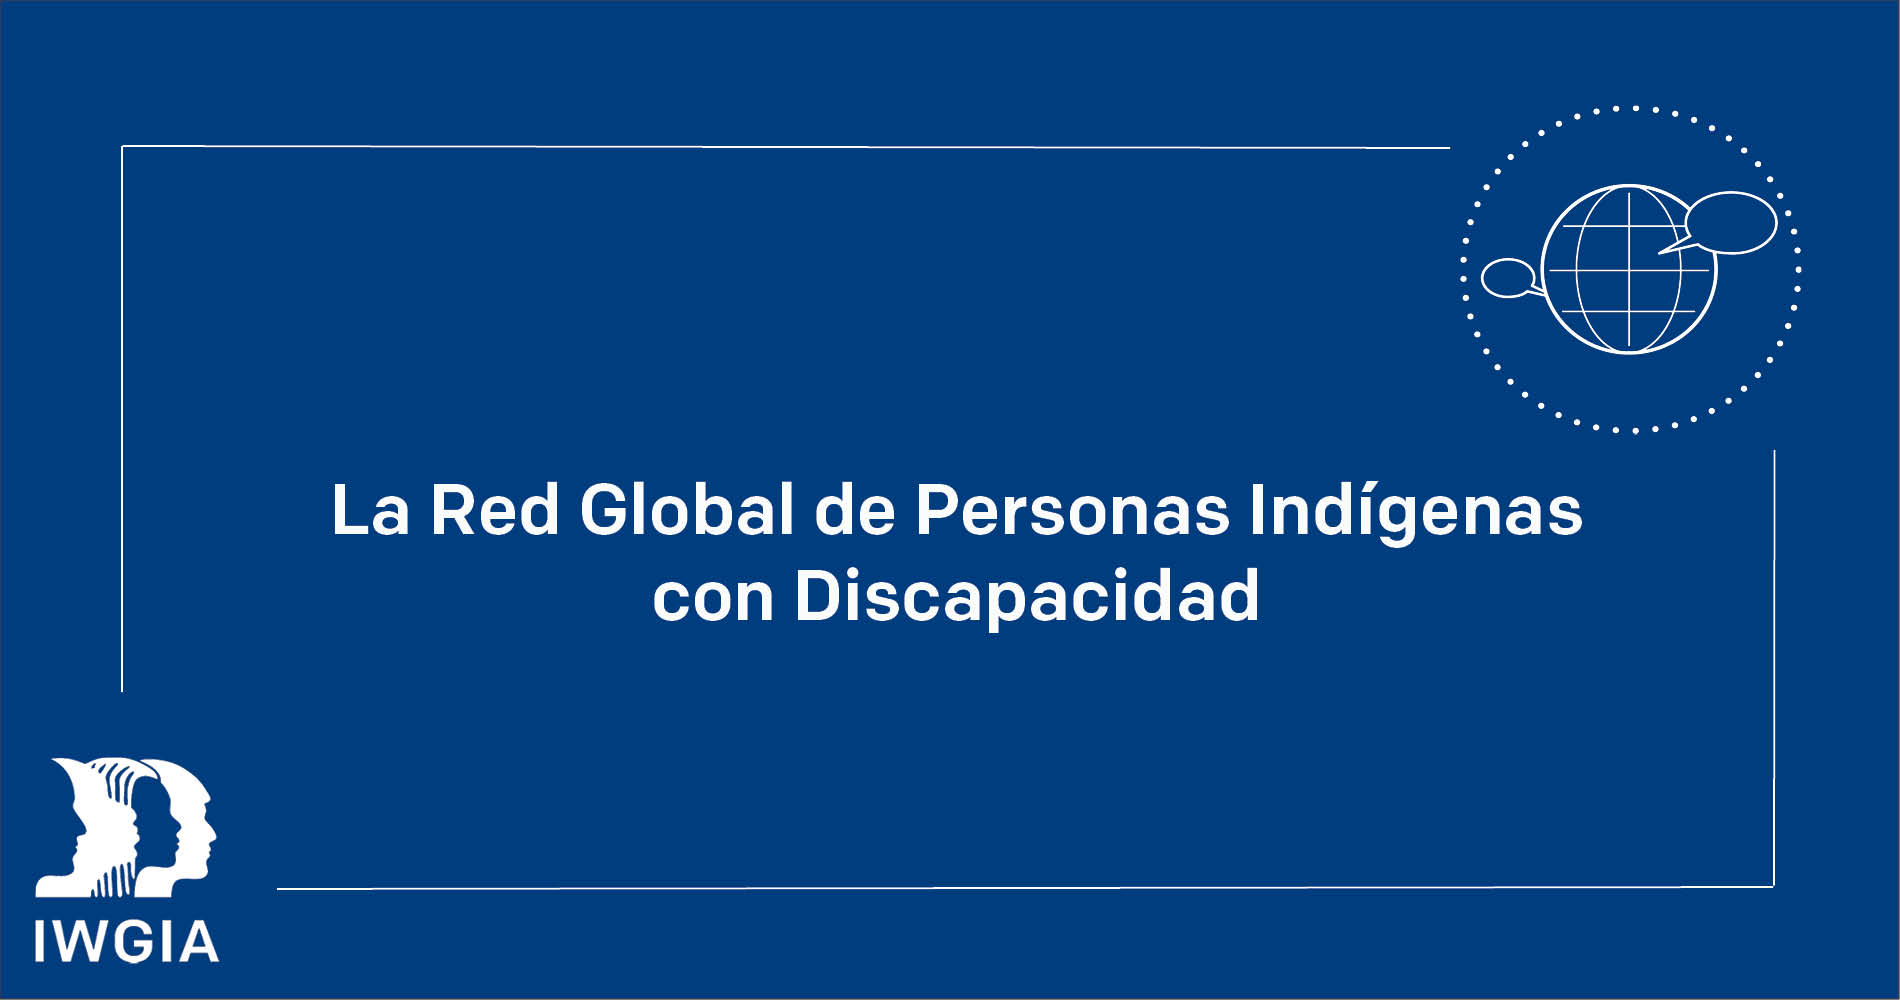 La Red Global de Personas Indígenas con Discapacidad